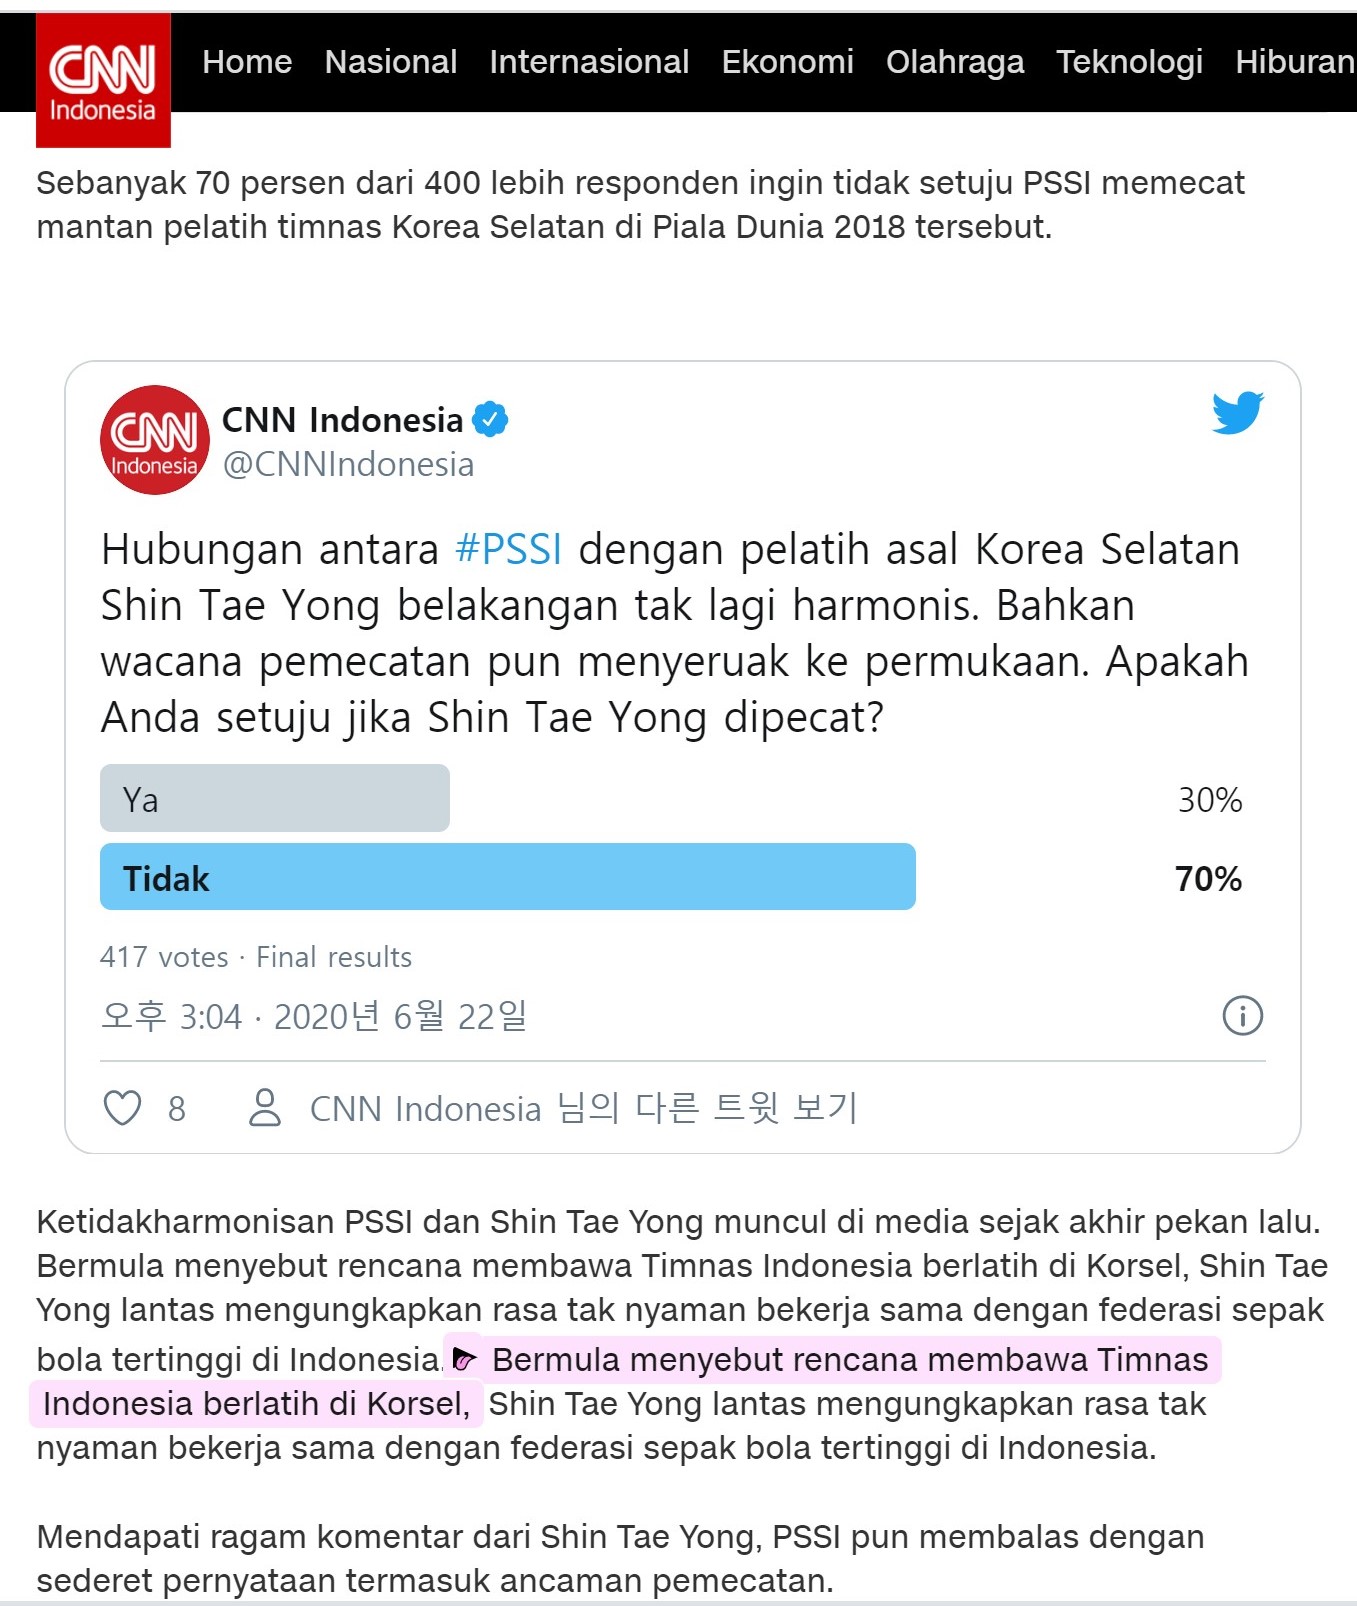 신태용-여론조사 cnnIndonesia